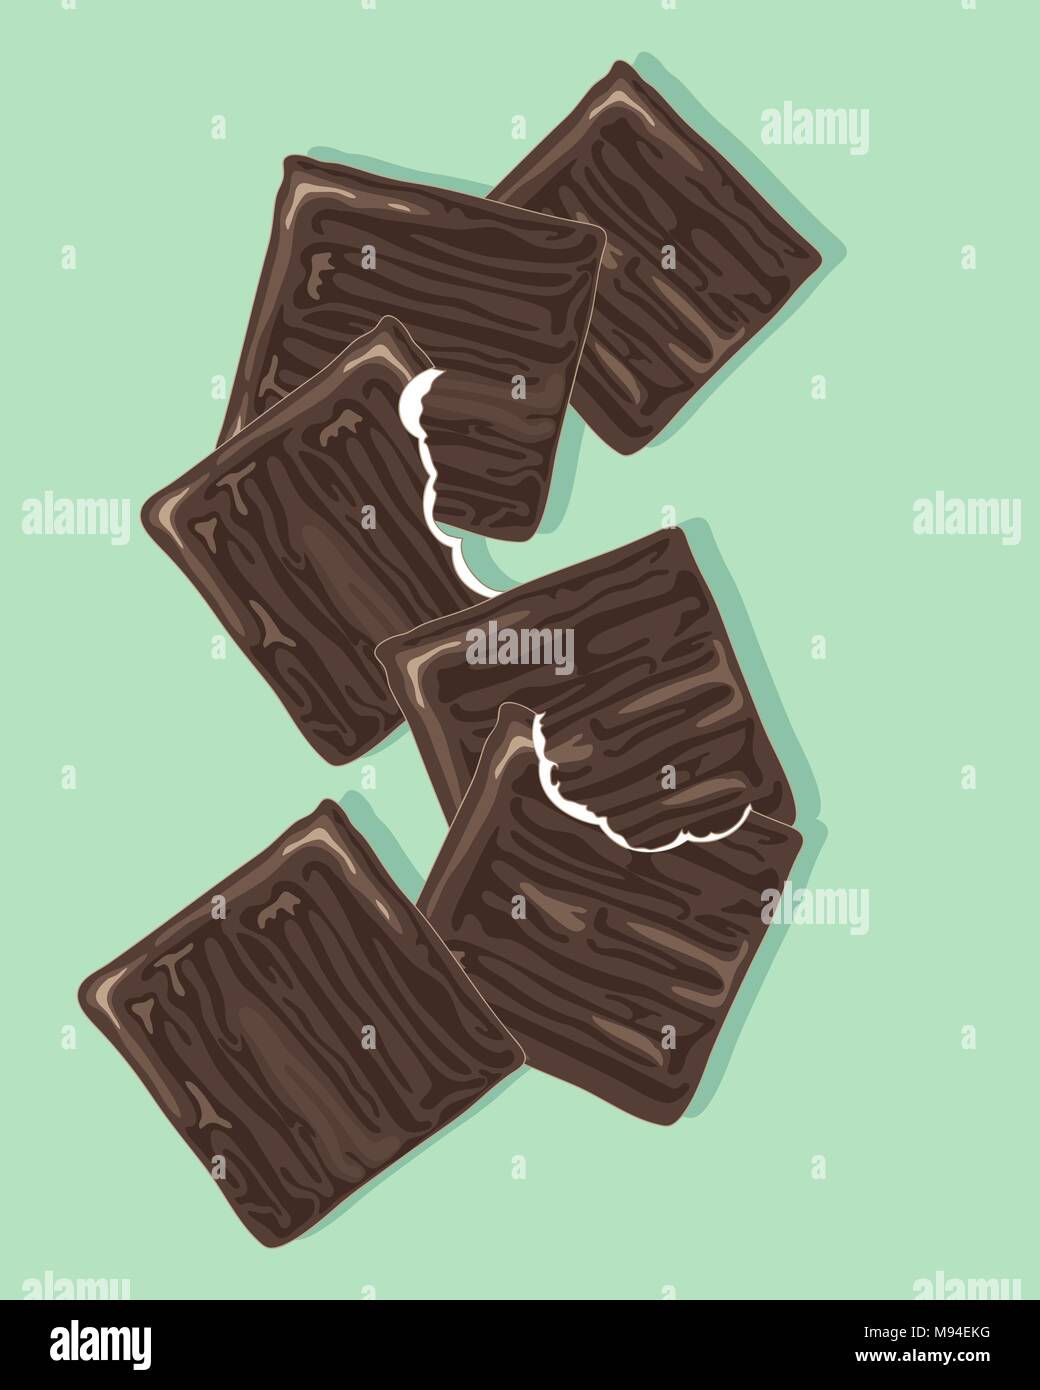 Un vecteur illustration en format eps 8 de chocolat menthe mince après le dîner dans un nuage de conception avec des marques de morsures sur un fond vert menthe Illustration de Vecteur